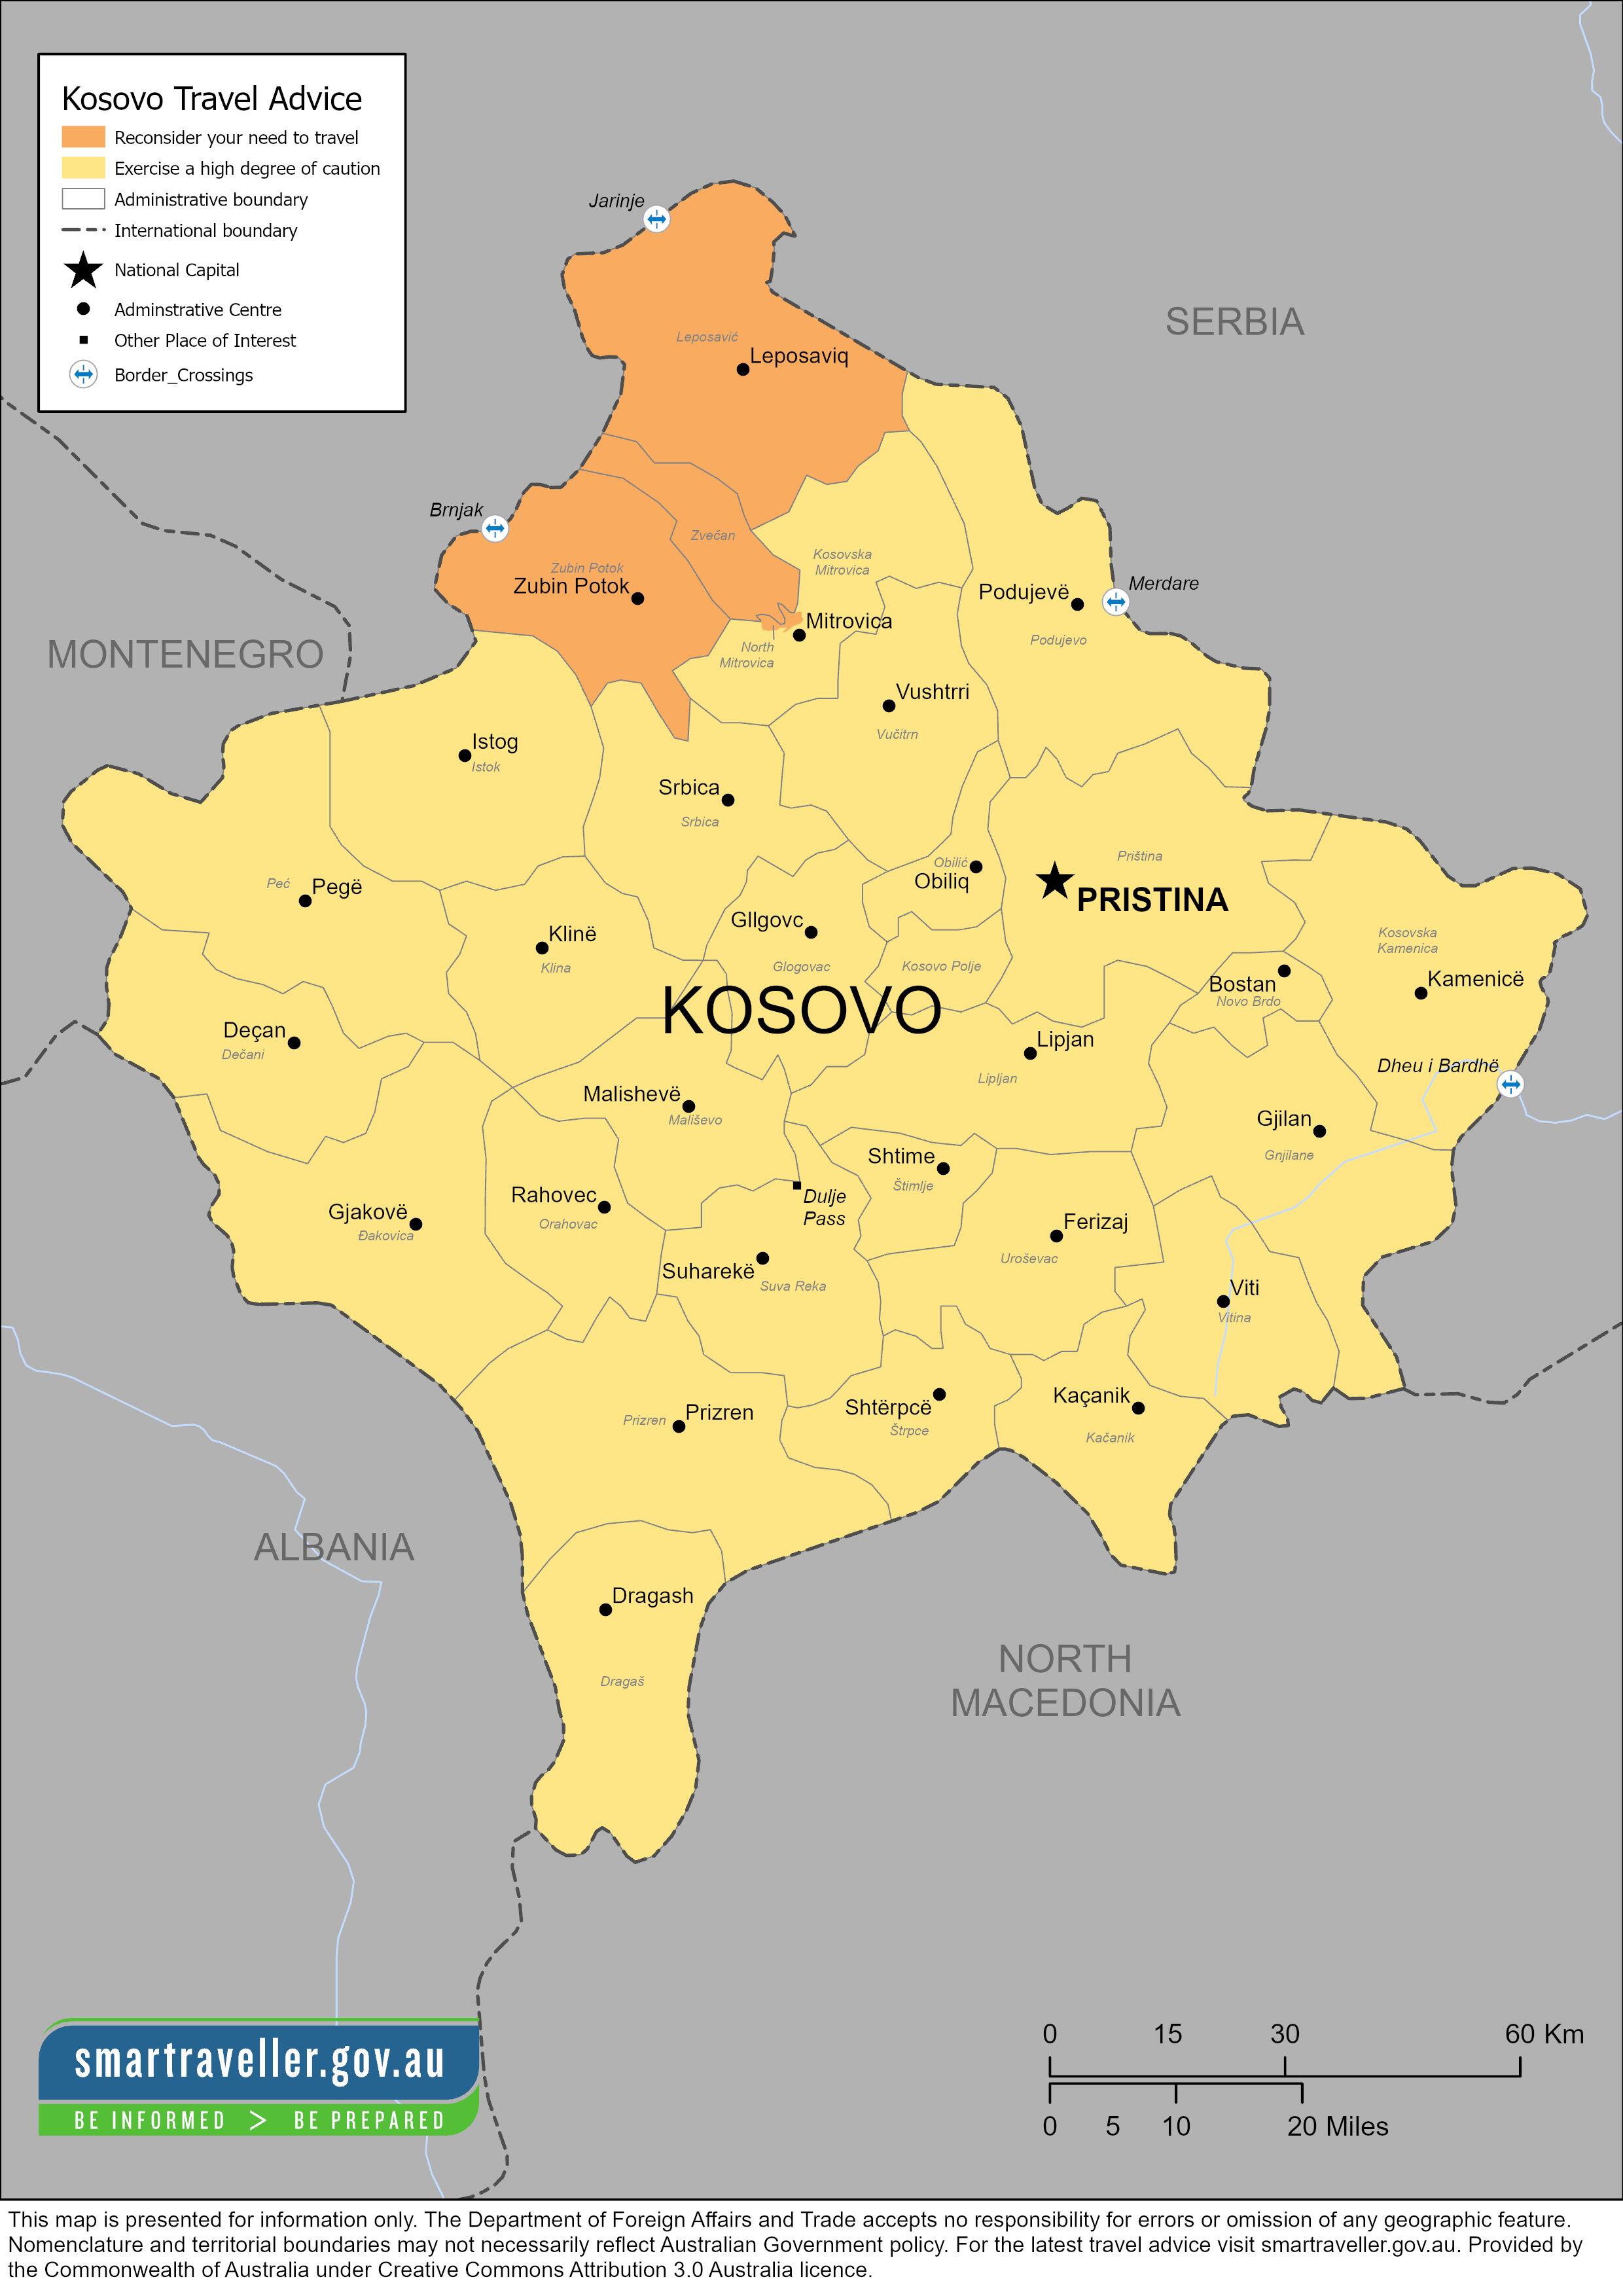 ##科索沃北部一支北约部队遭袭